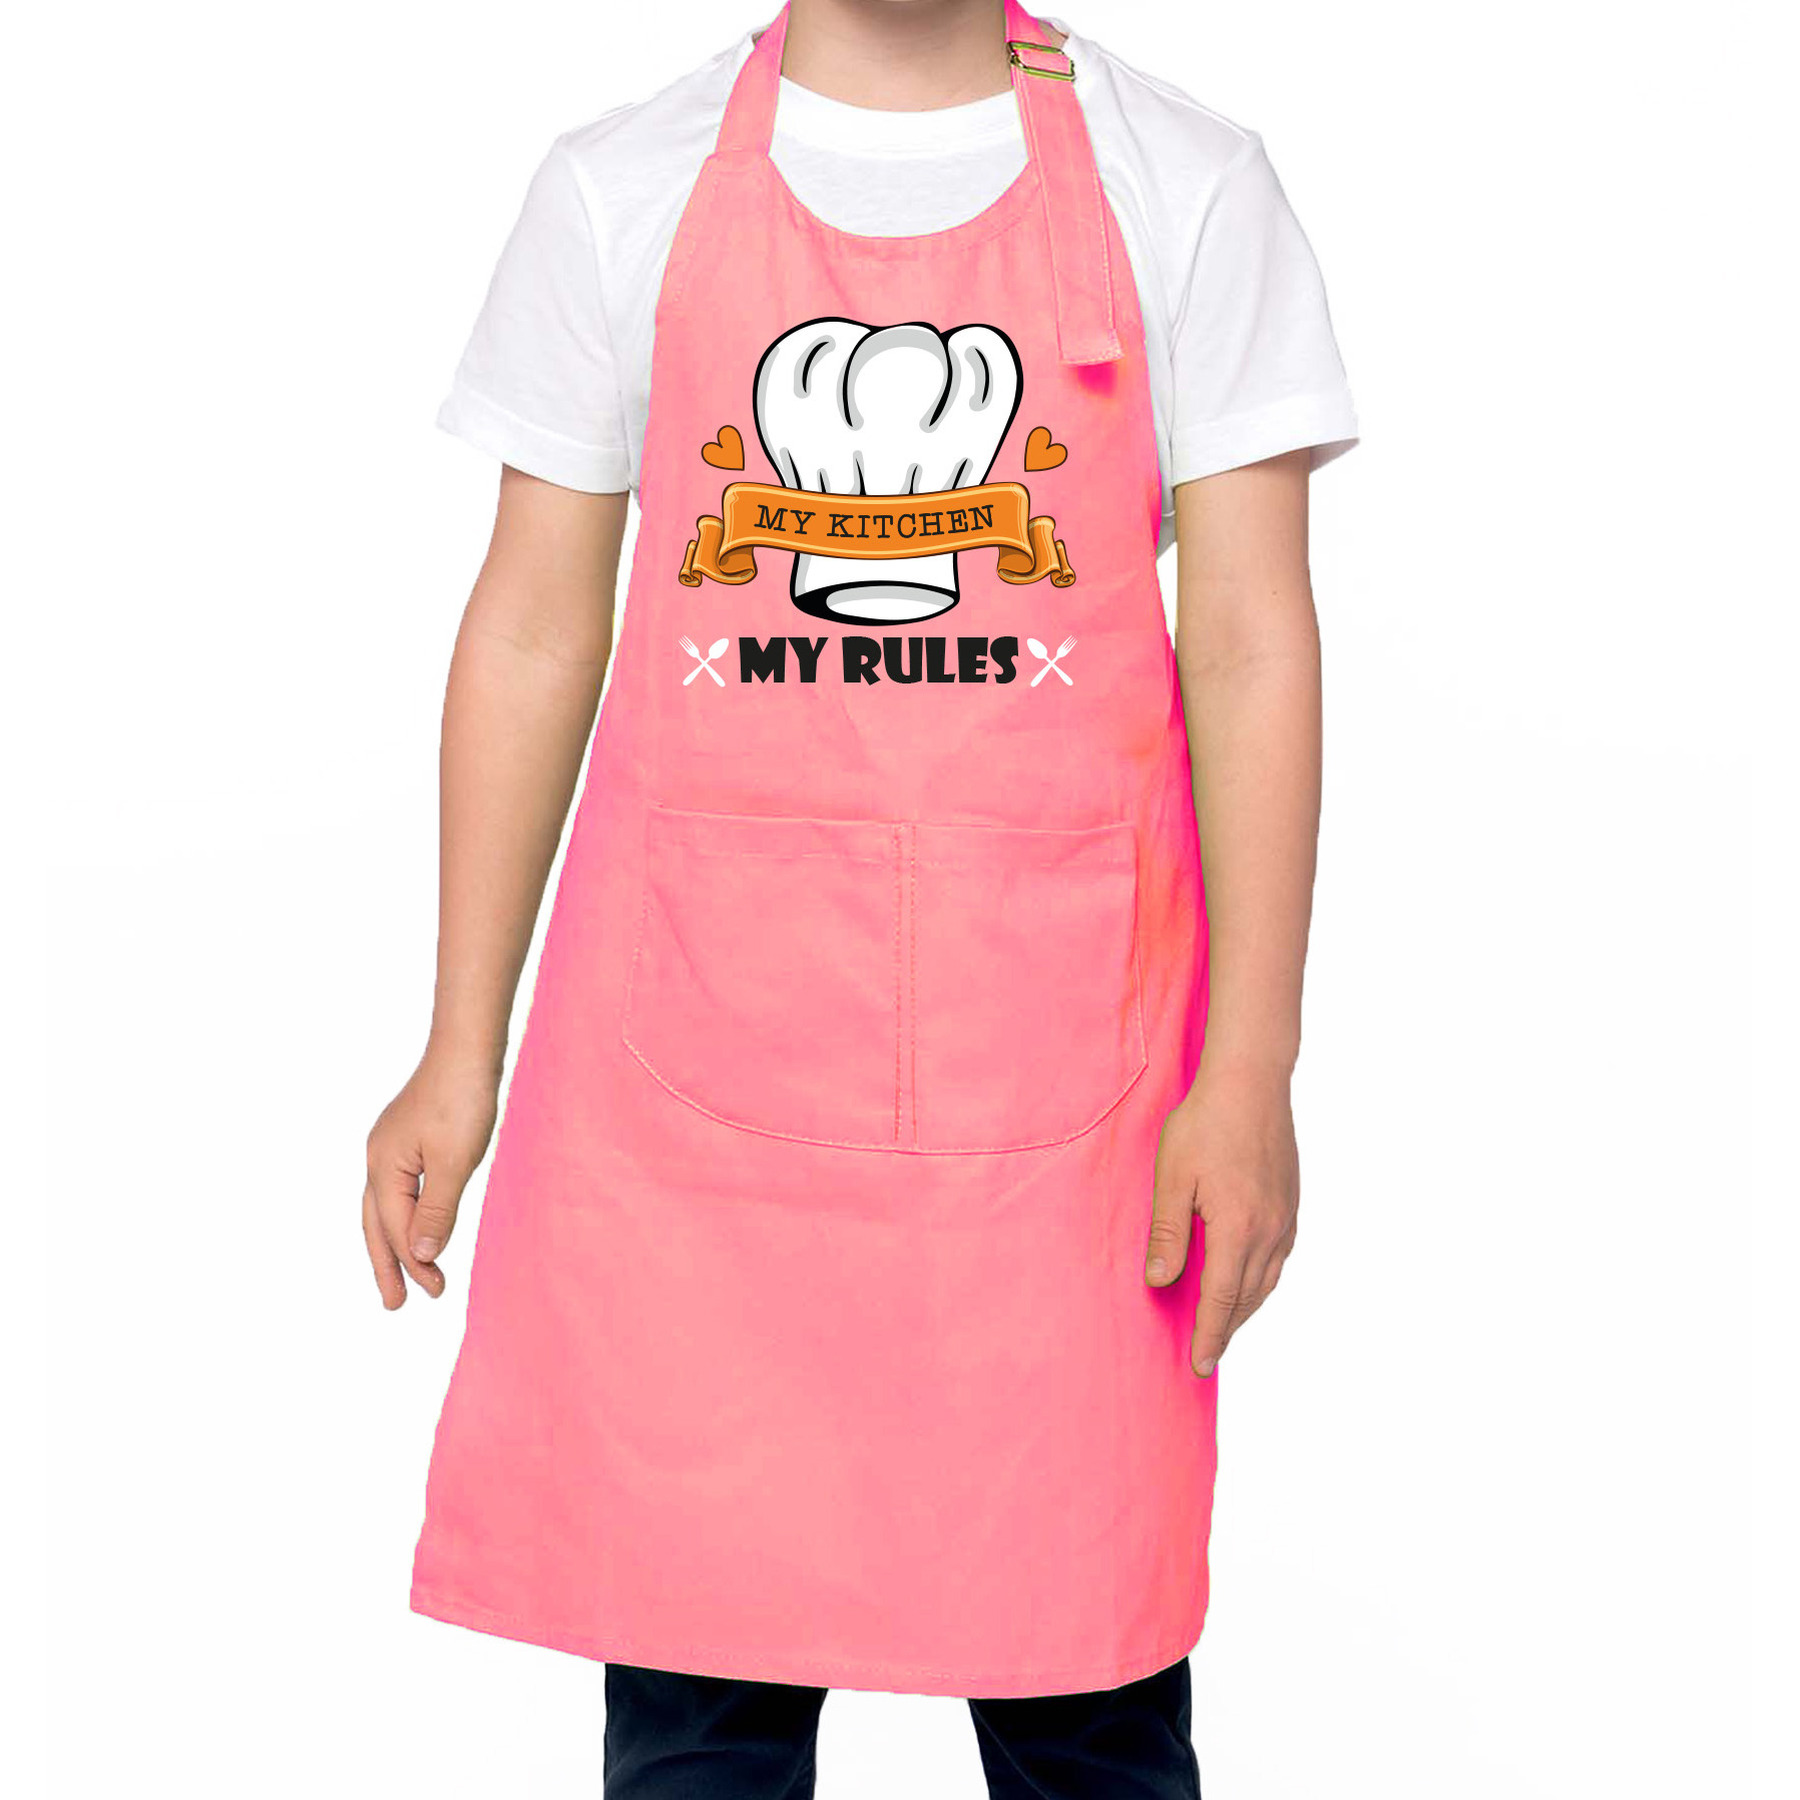 Keukenschort voor kinderen my kitchen my rules roze unisex keukenprinses-keukenprins